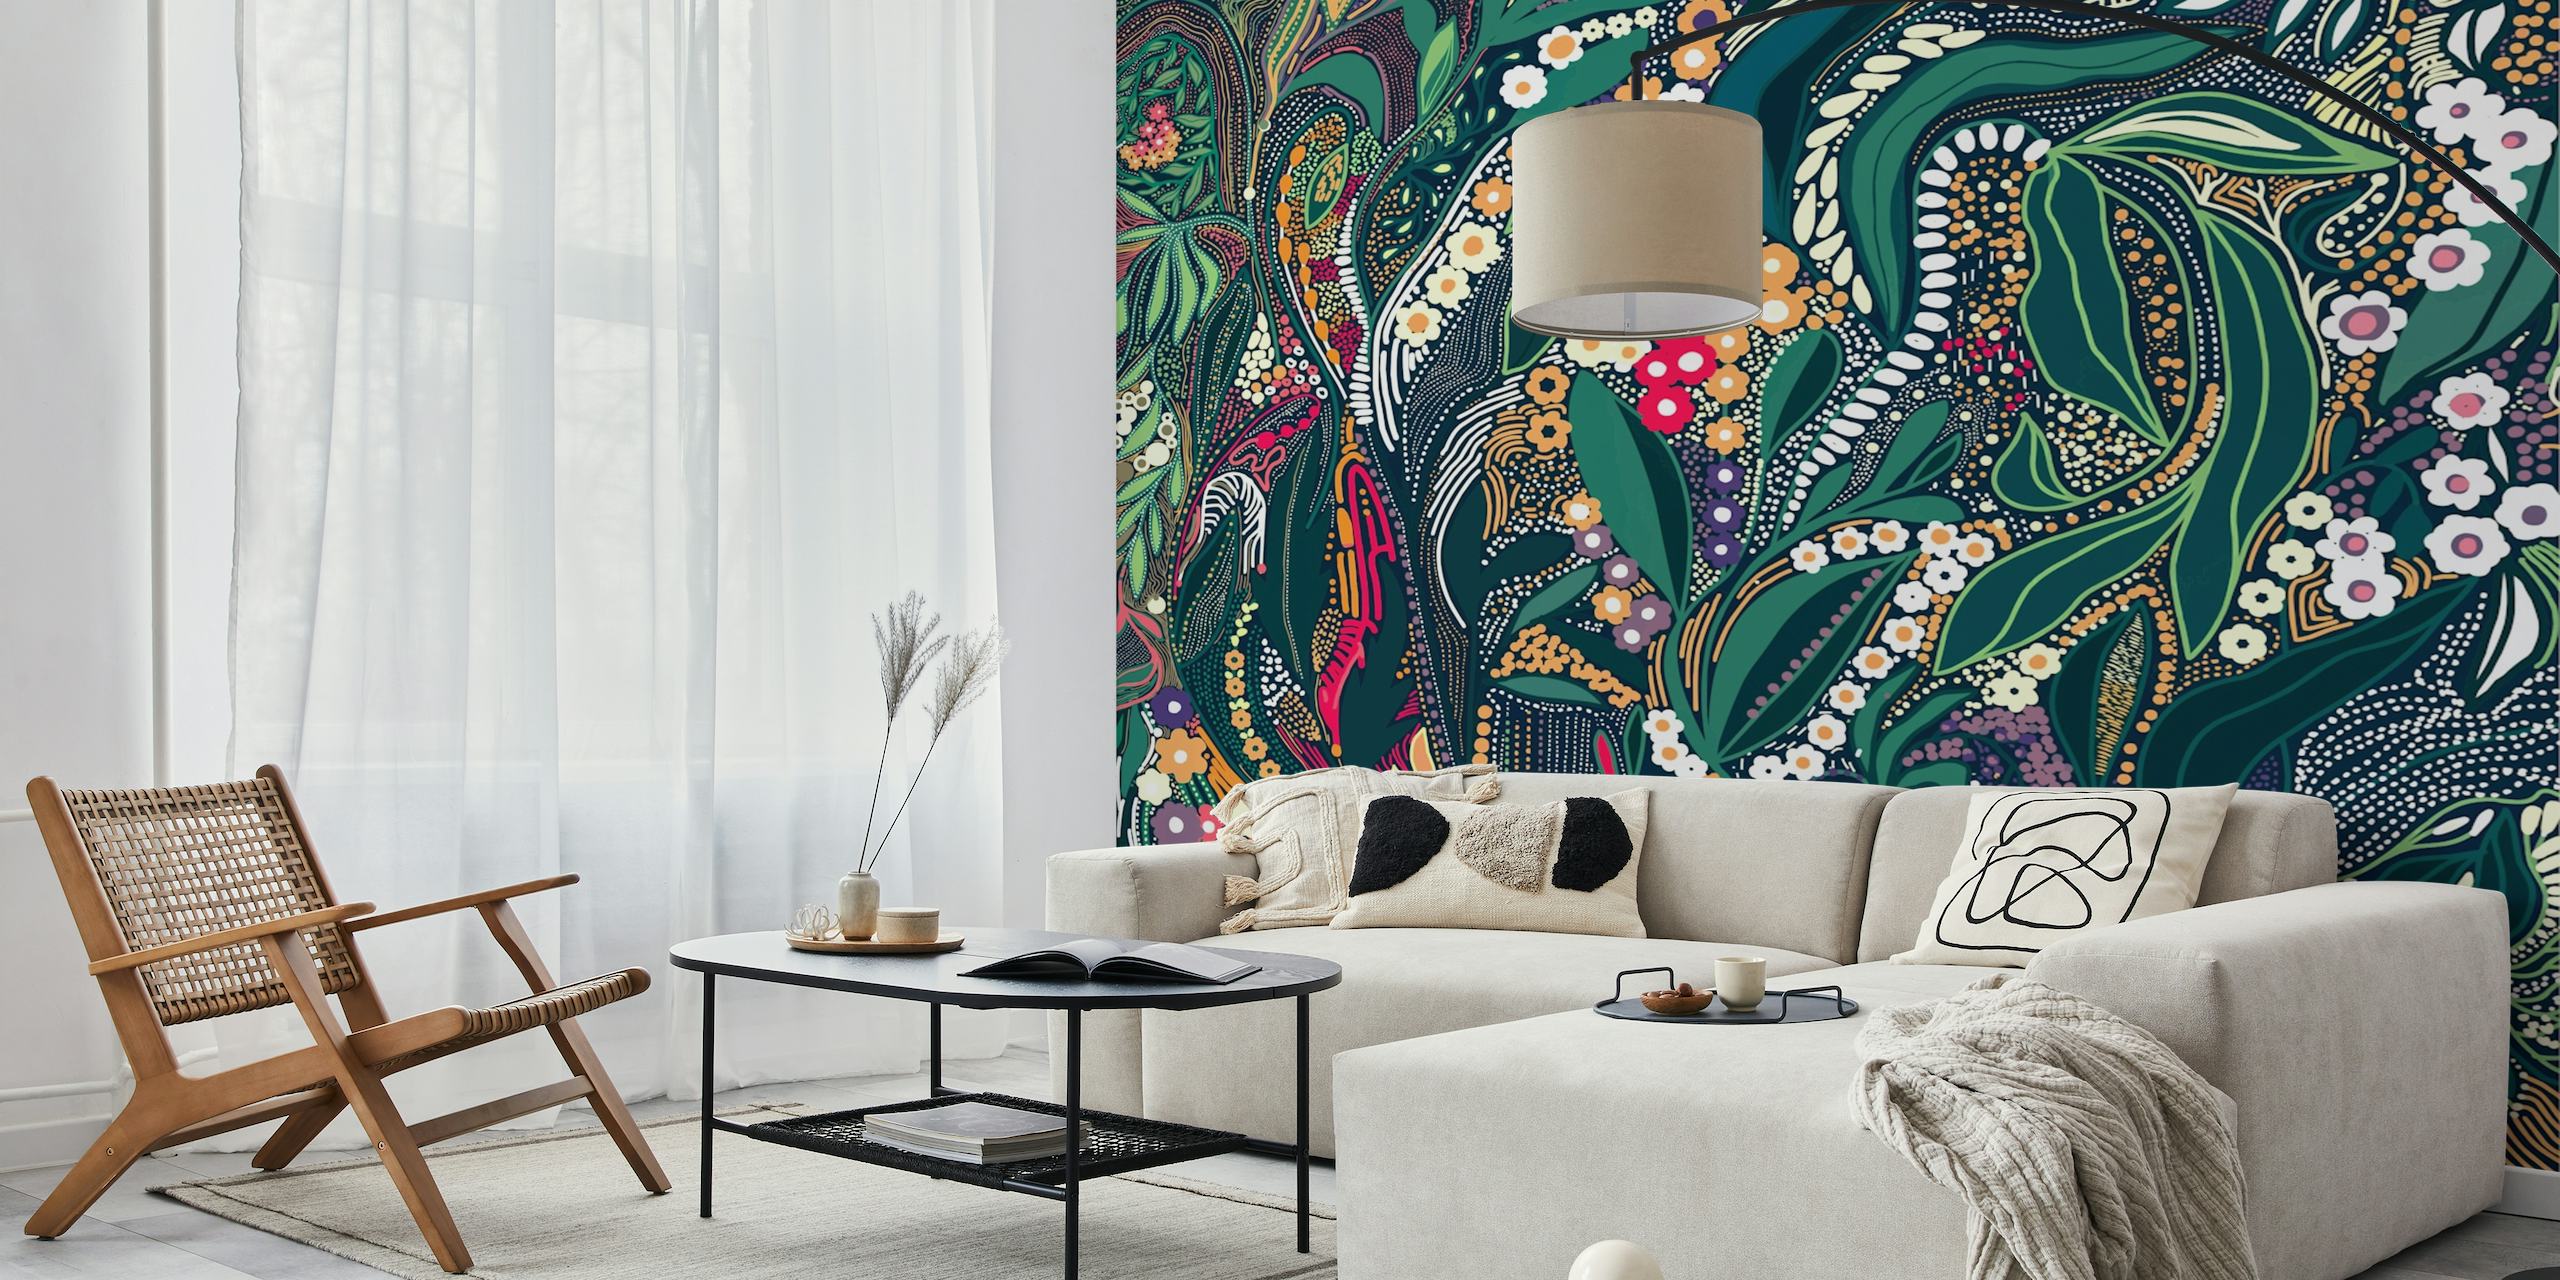 Zidna slika sa zamršenim dizajnom lišća, cvijeća i šara u raskošnim bojama.